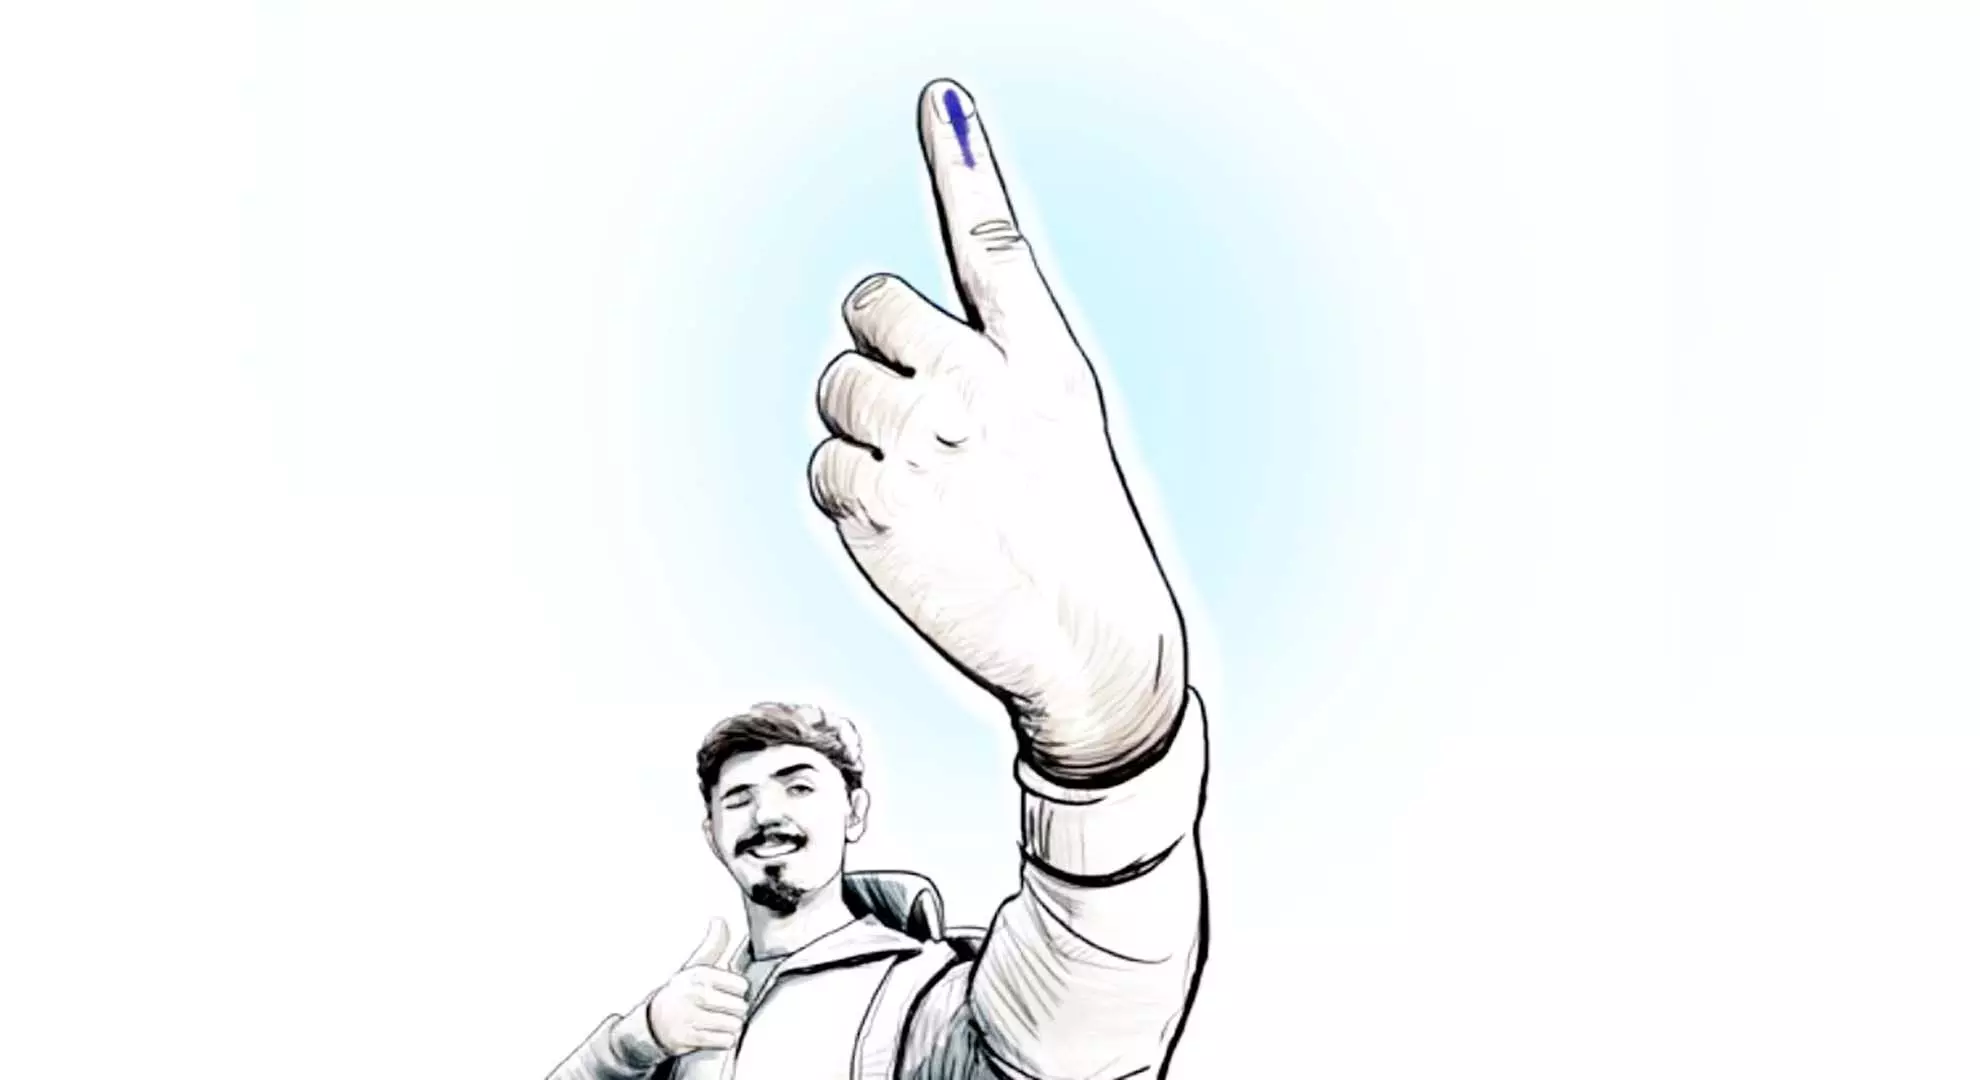 आरडब्ल्यूए इस चुनाव में बेंगलुरु के खराब मतदान प्रतिशत को बेहतर बनाएगी